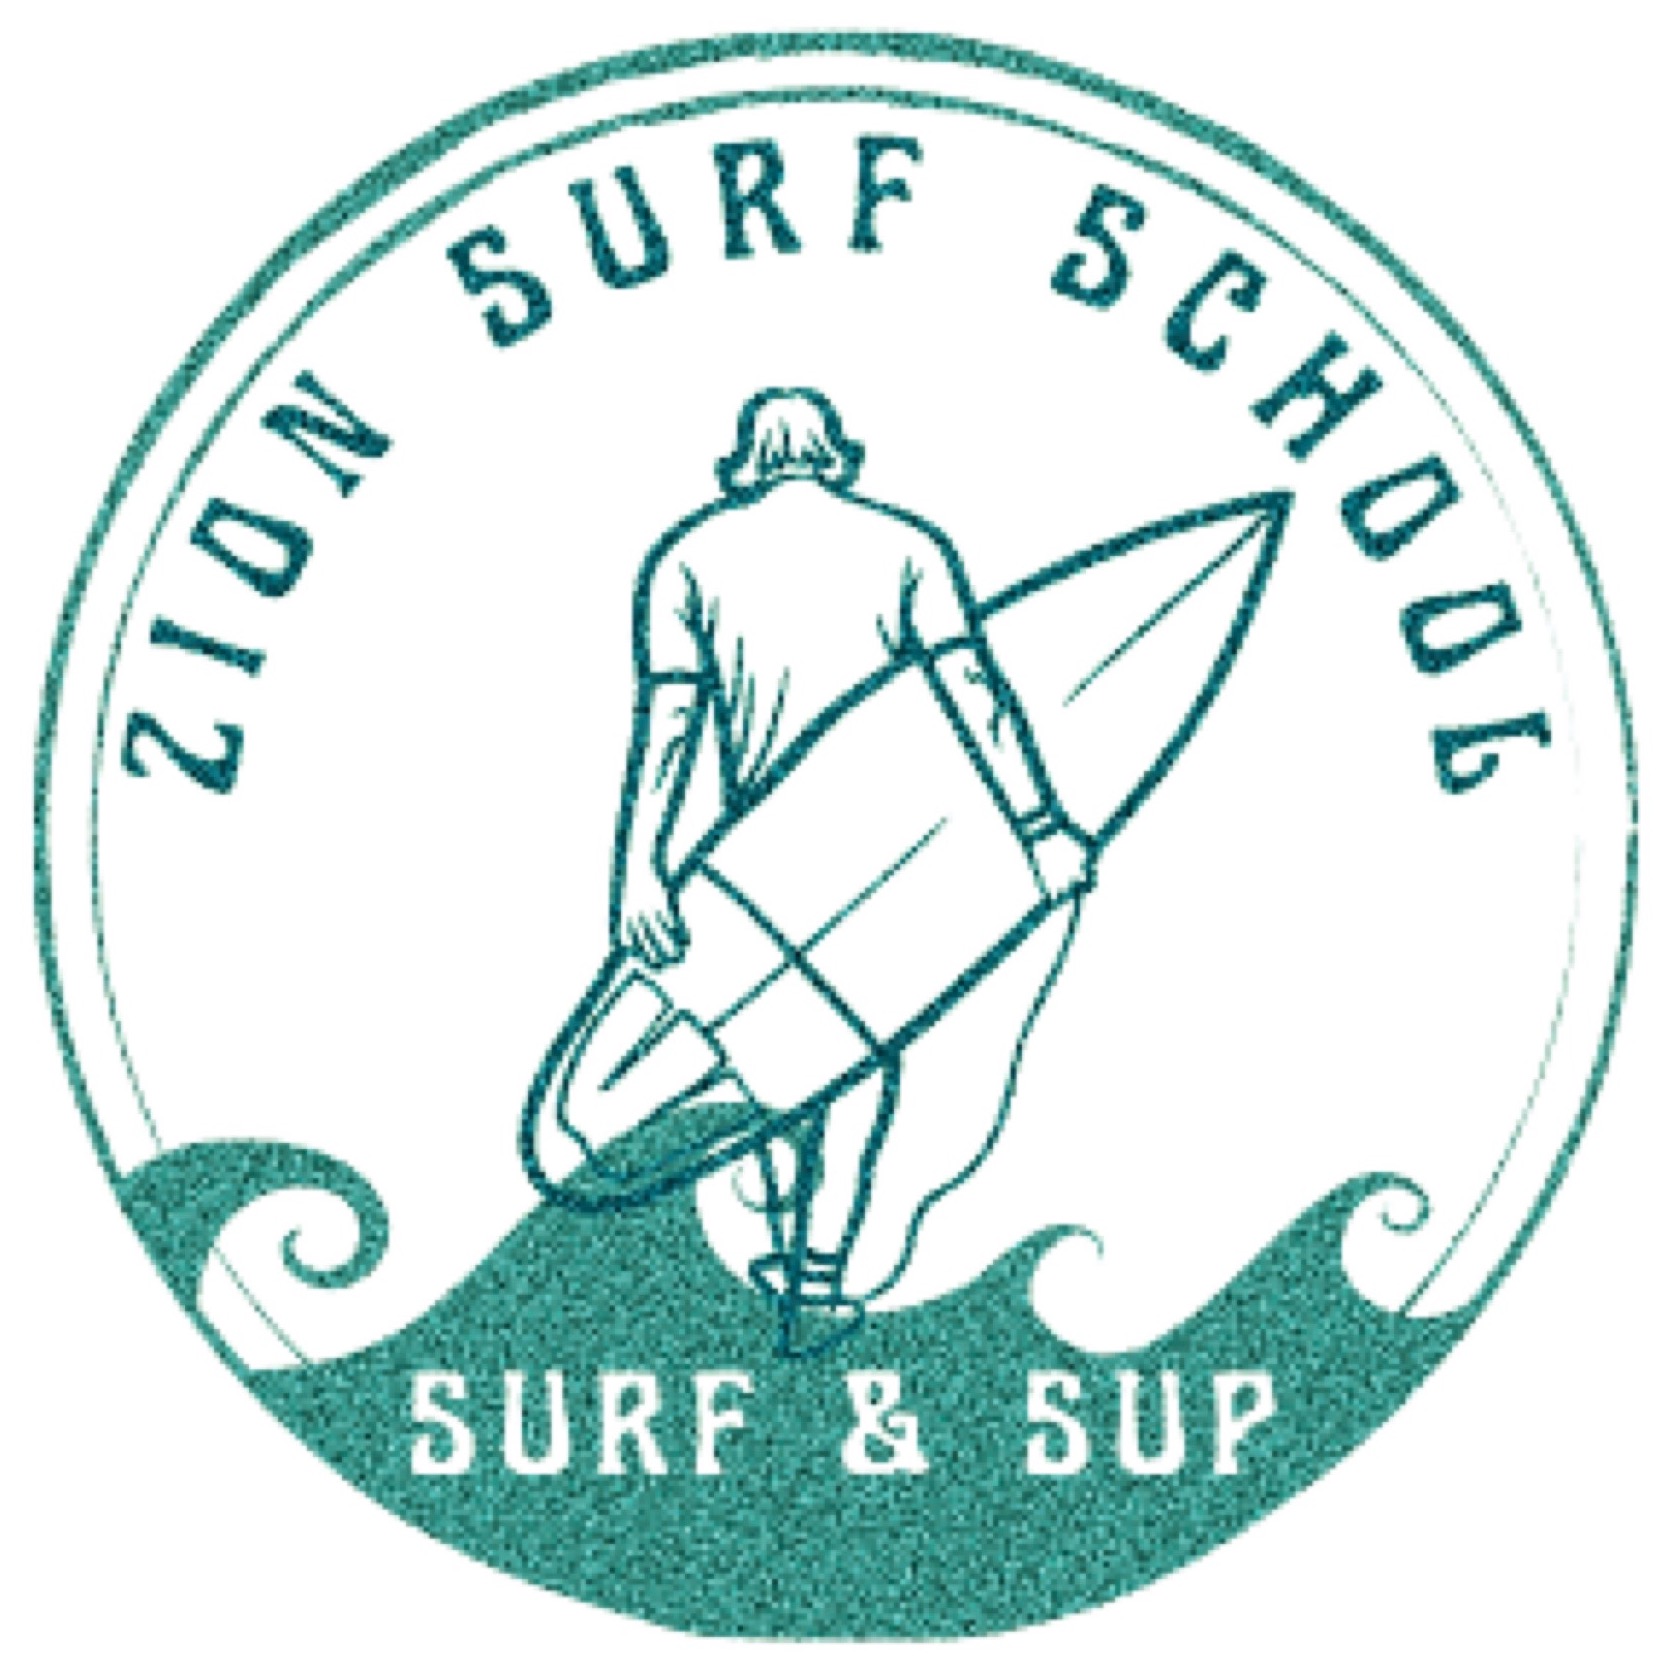 Zion surf school